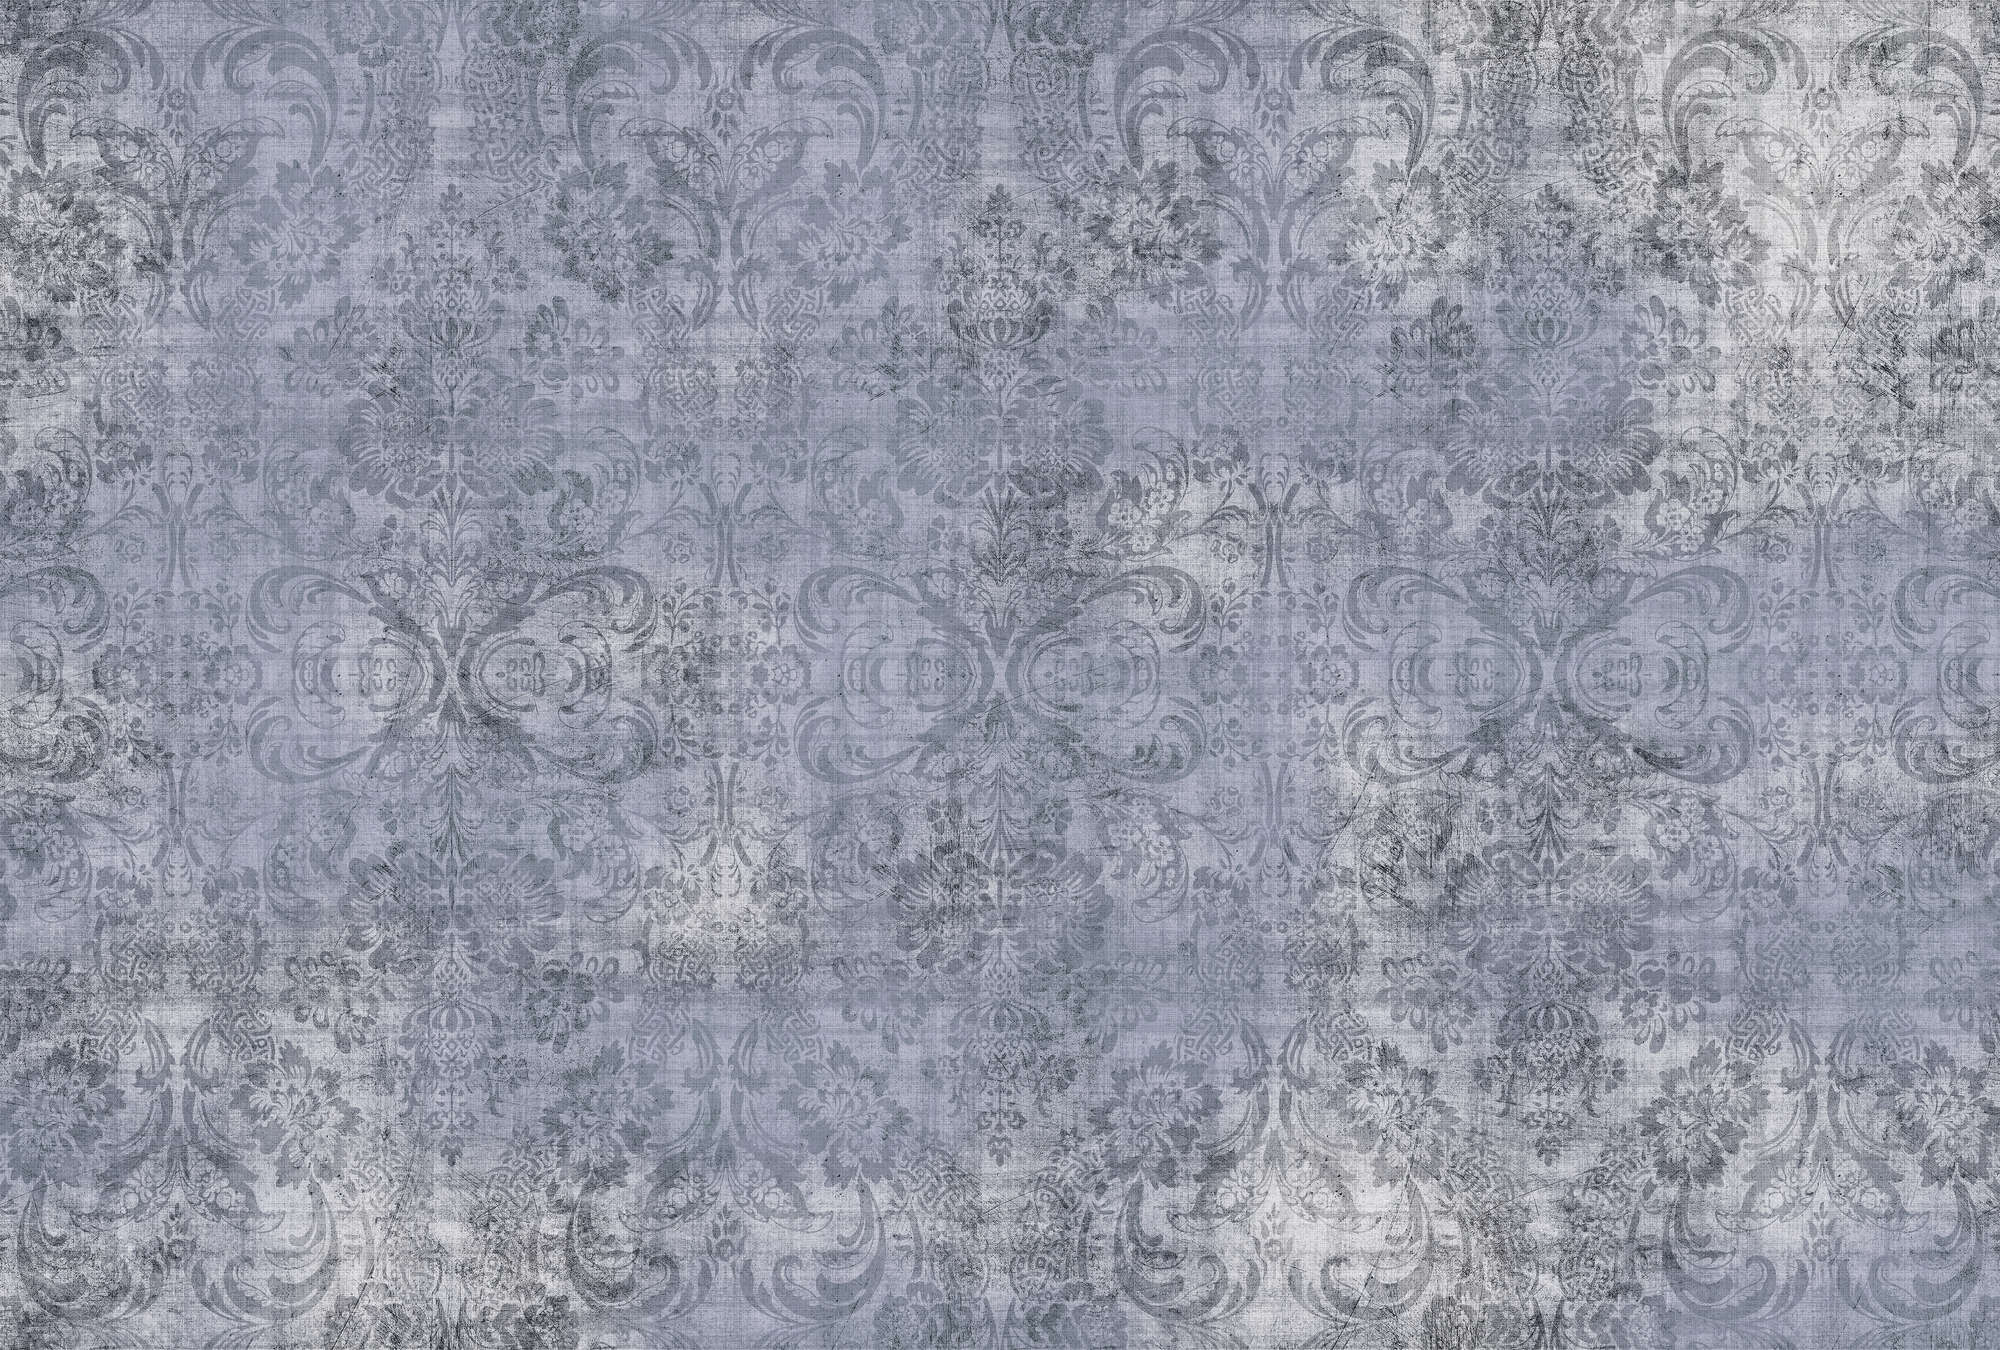             Old damask 3 - natural linen structure blue mottled ornaments wallpaper - Blue | Matt smooth fleece
        